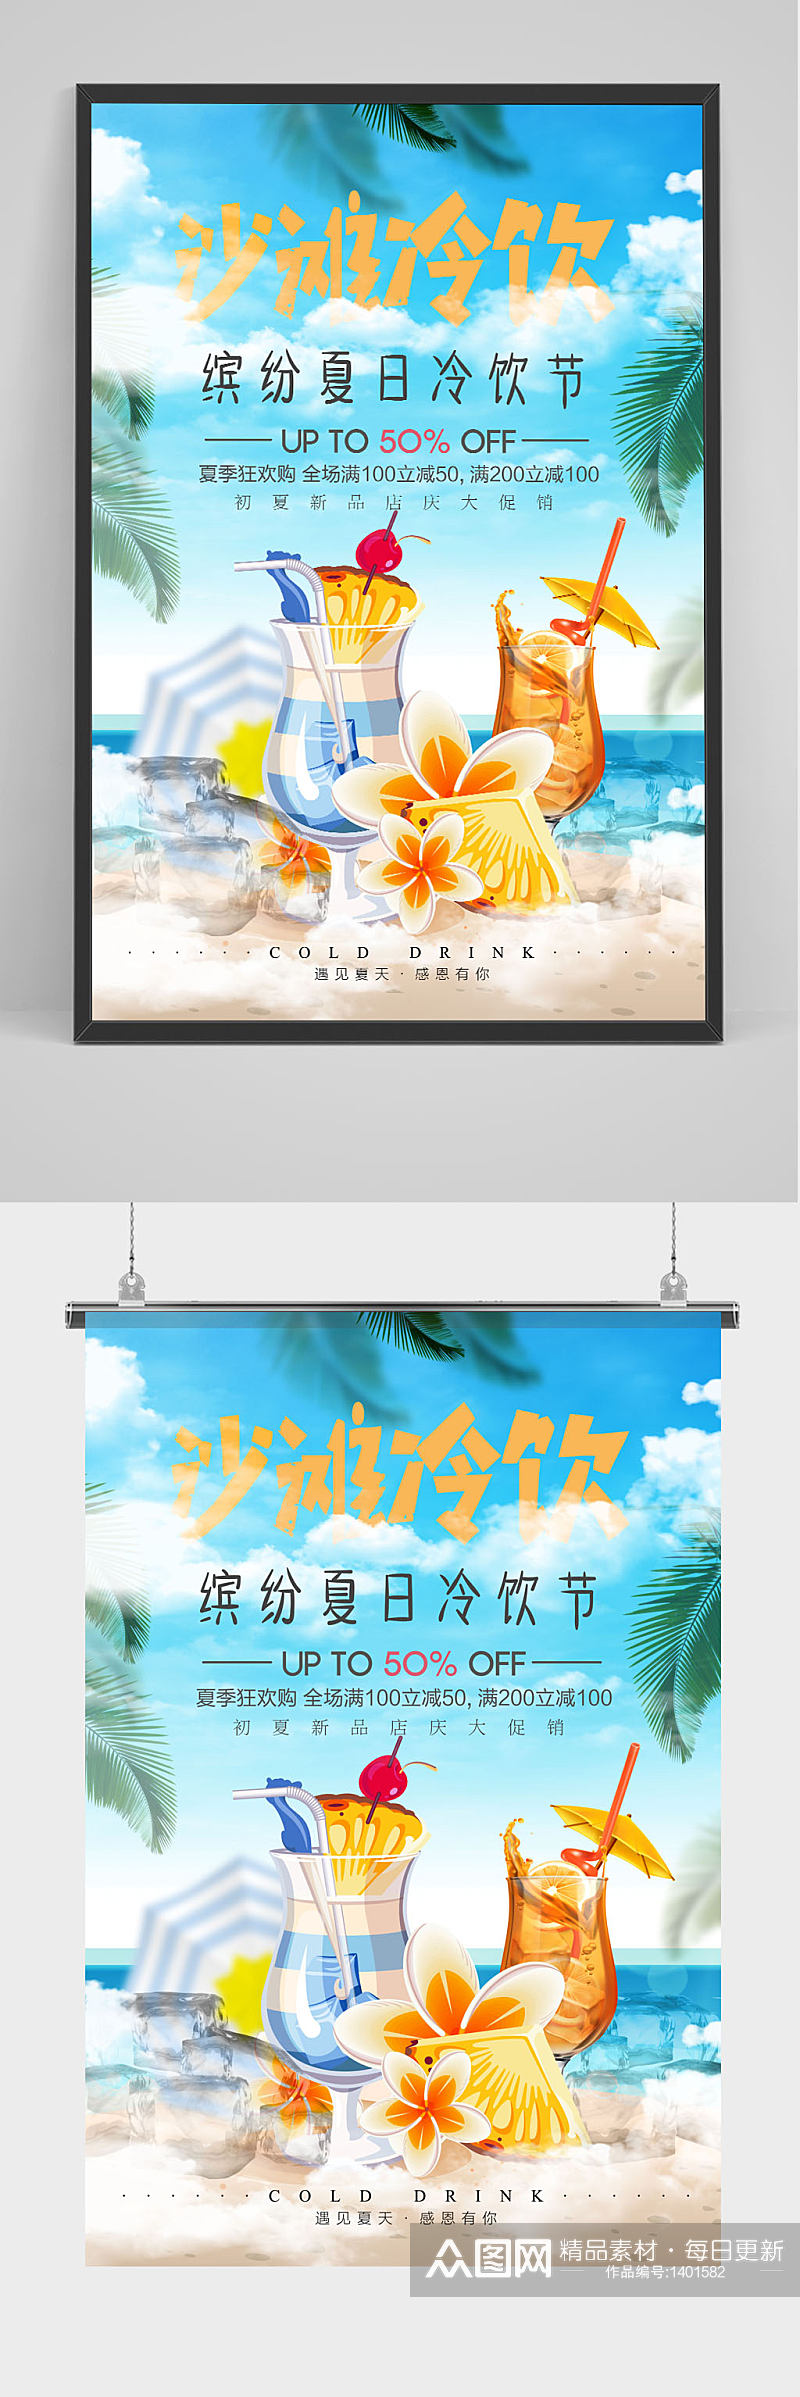 清新缤纷夏日沙滩冷饮海报设计素材